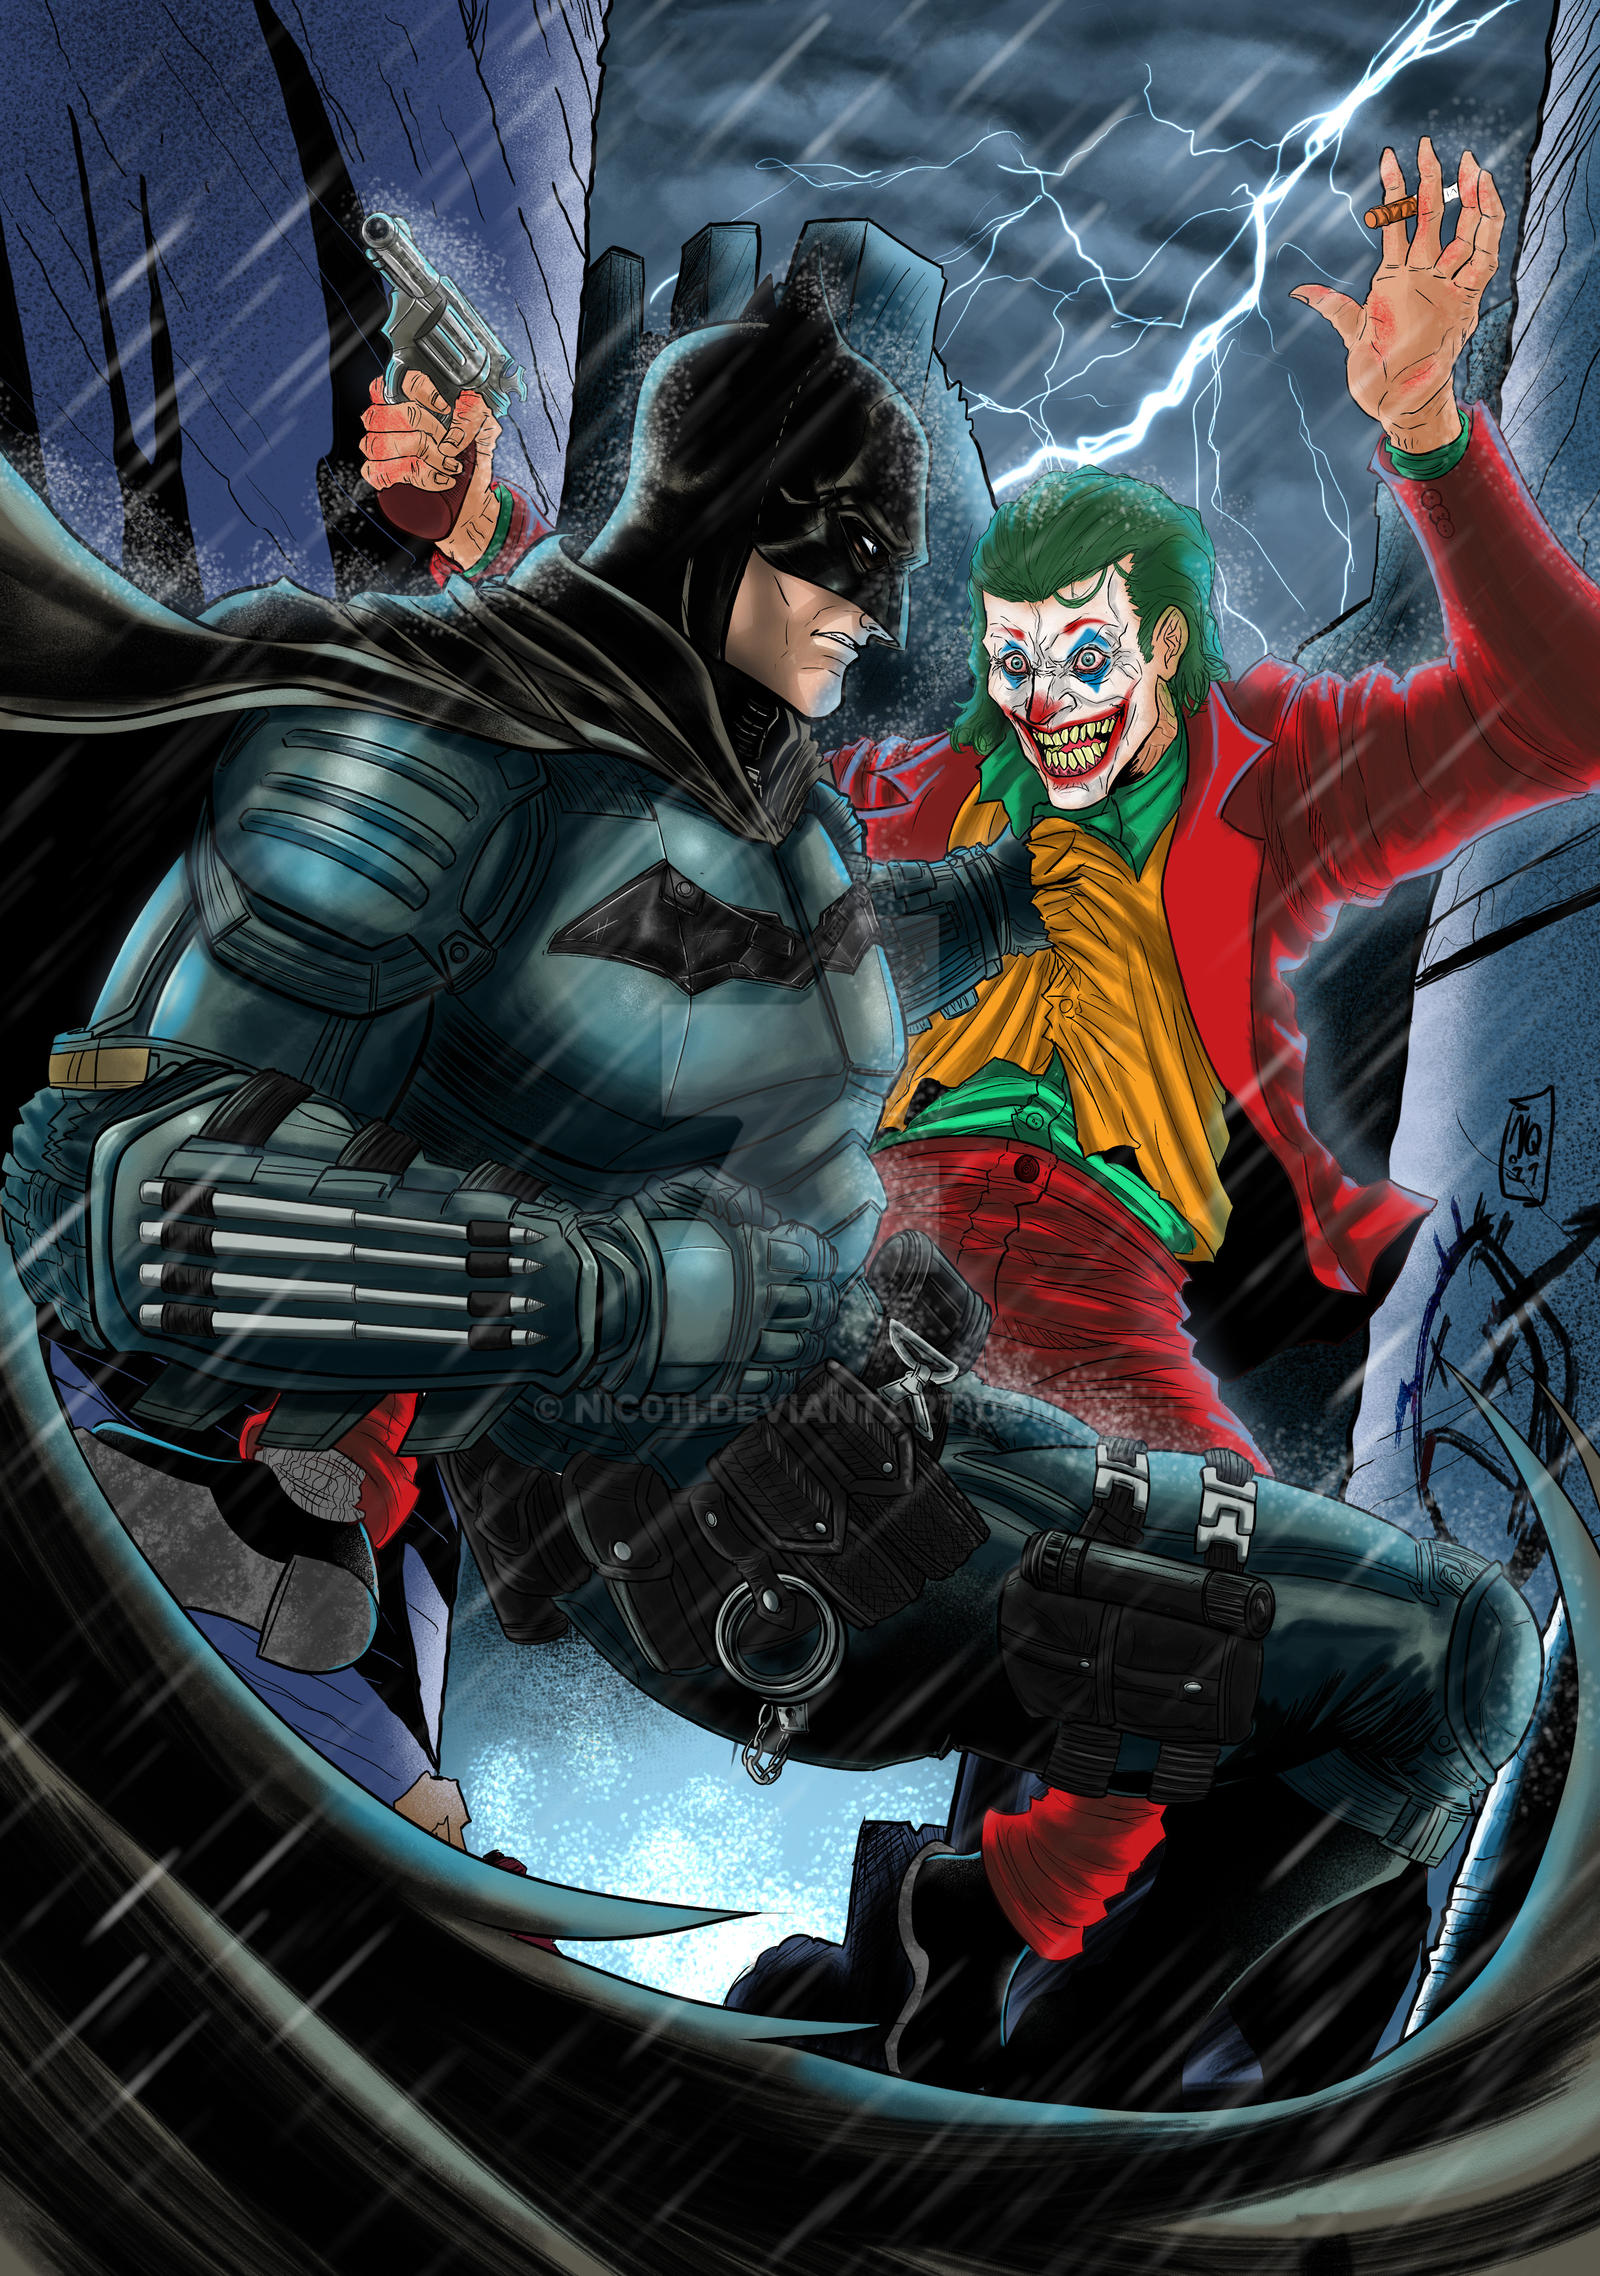 The Batman vs Joker Variant by nic011 on DeviantArt